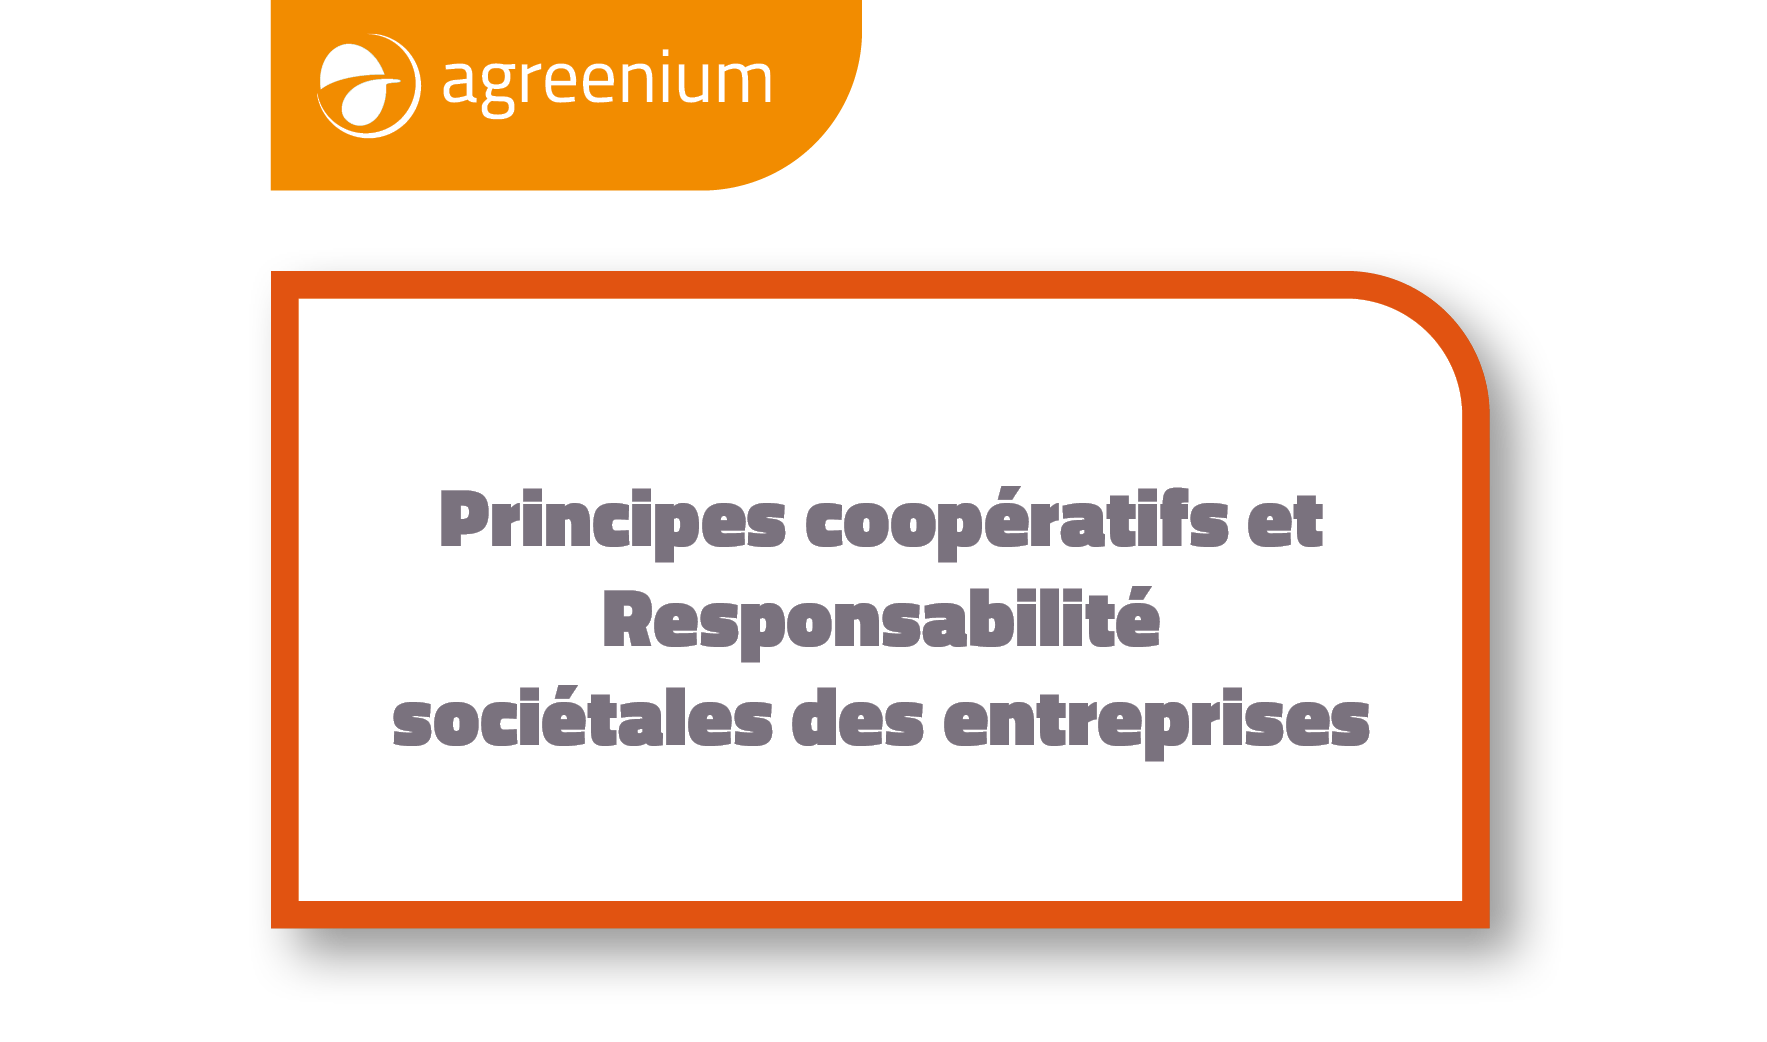 Principes coopératifs et Responsabilité
sociétales des entreprises